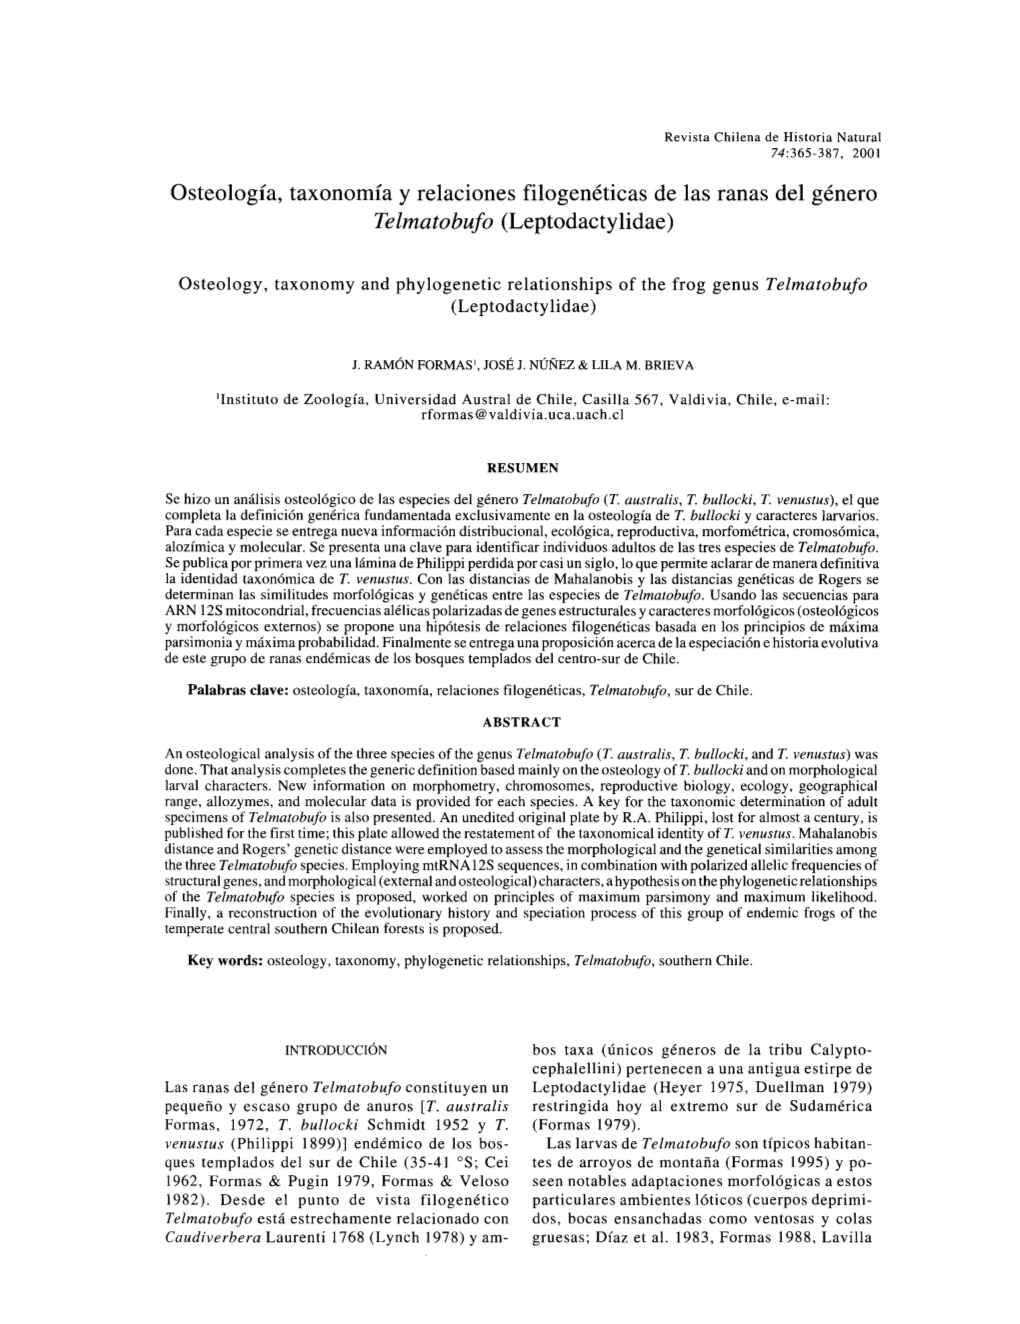 Osteología, Taxonomía Y Relaciones Filogenéticas De Las Ranas Del Género Telmatobufo (Leptodactylidae)